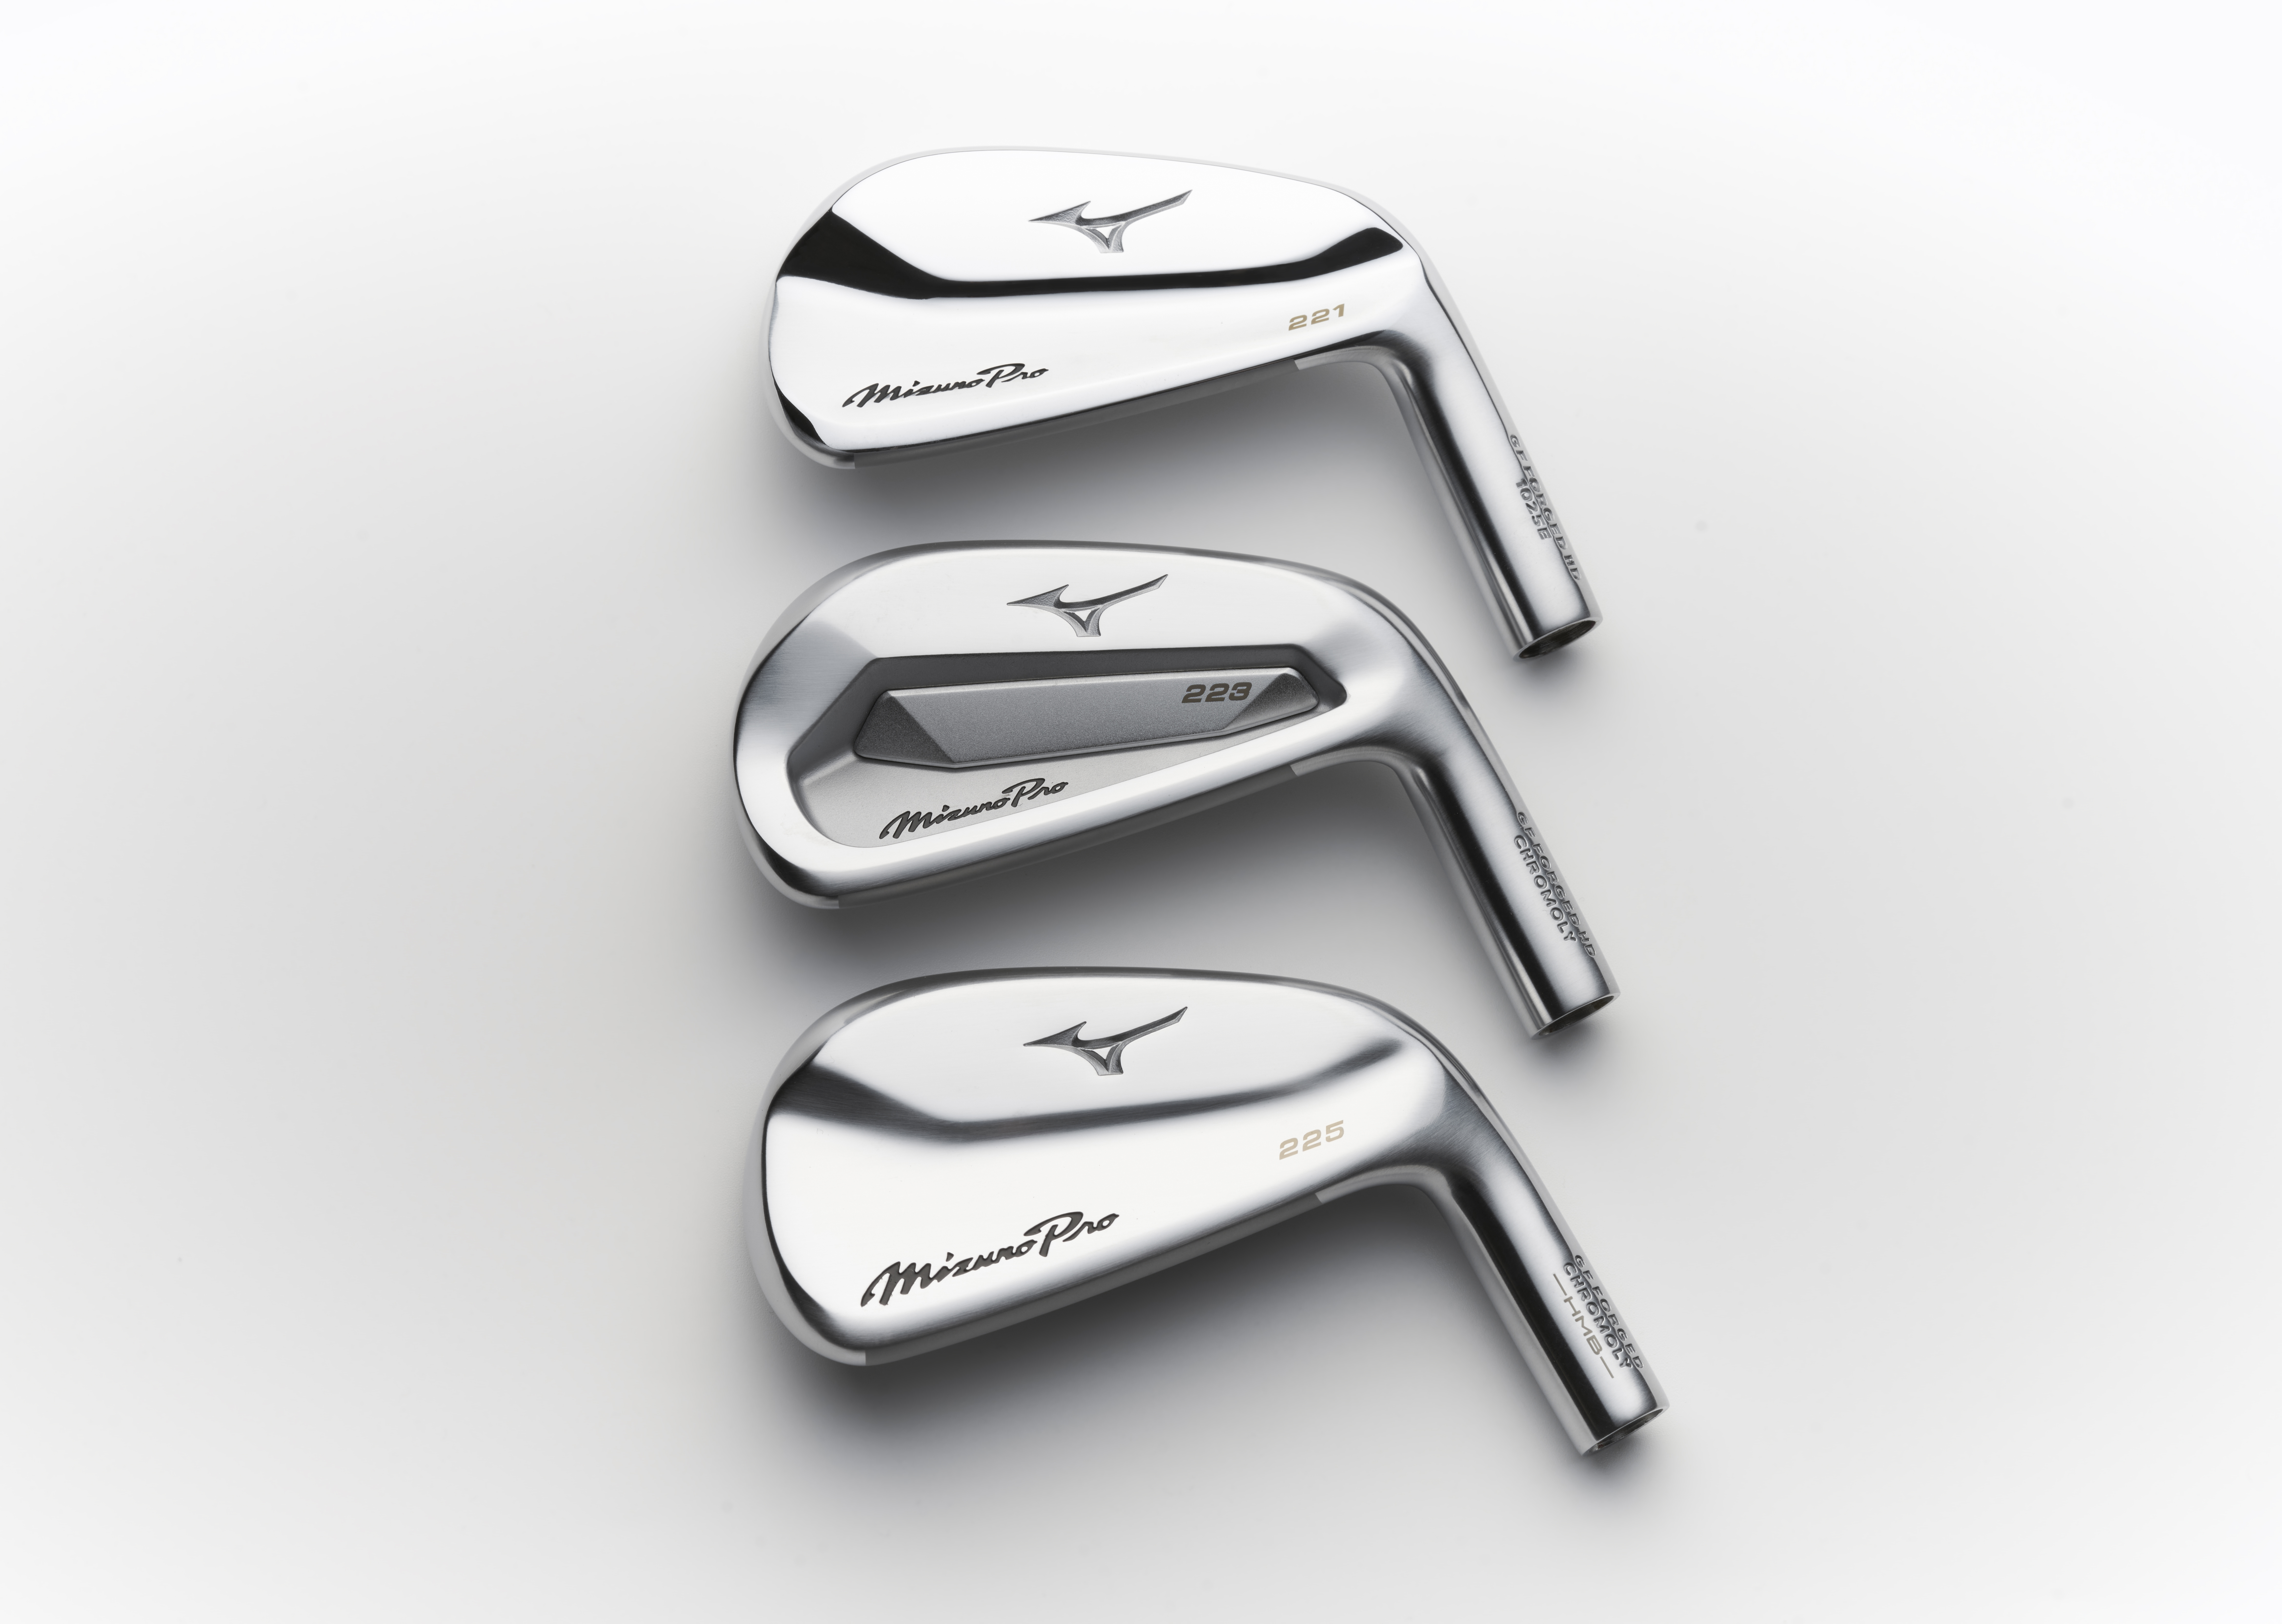 bouw Rechtsaf kop First look: New Mizuno Pro irons | Golf Equipment: Clubs, Balls, Bags |  Golf Digest